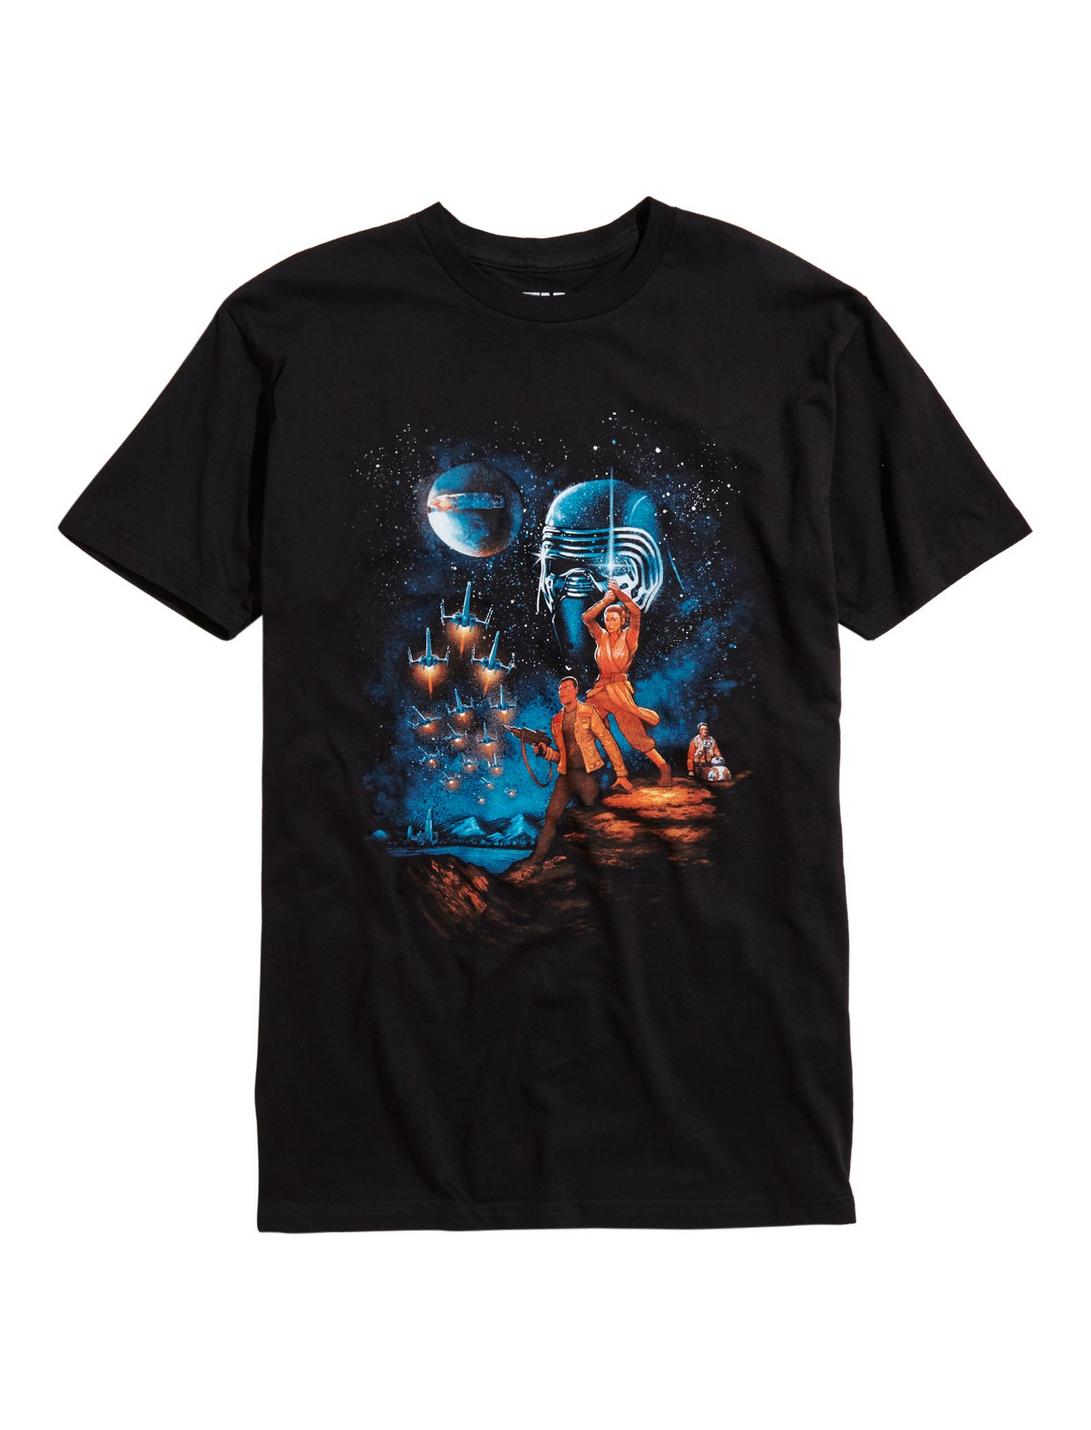 Star Wars: The Force Awakens Epic Awakening T-Shirt, BLACK, hi-res